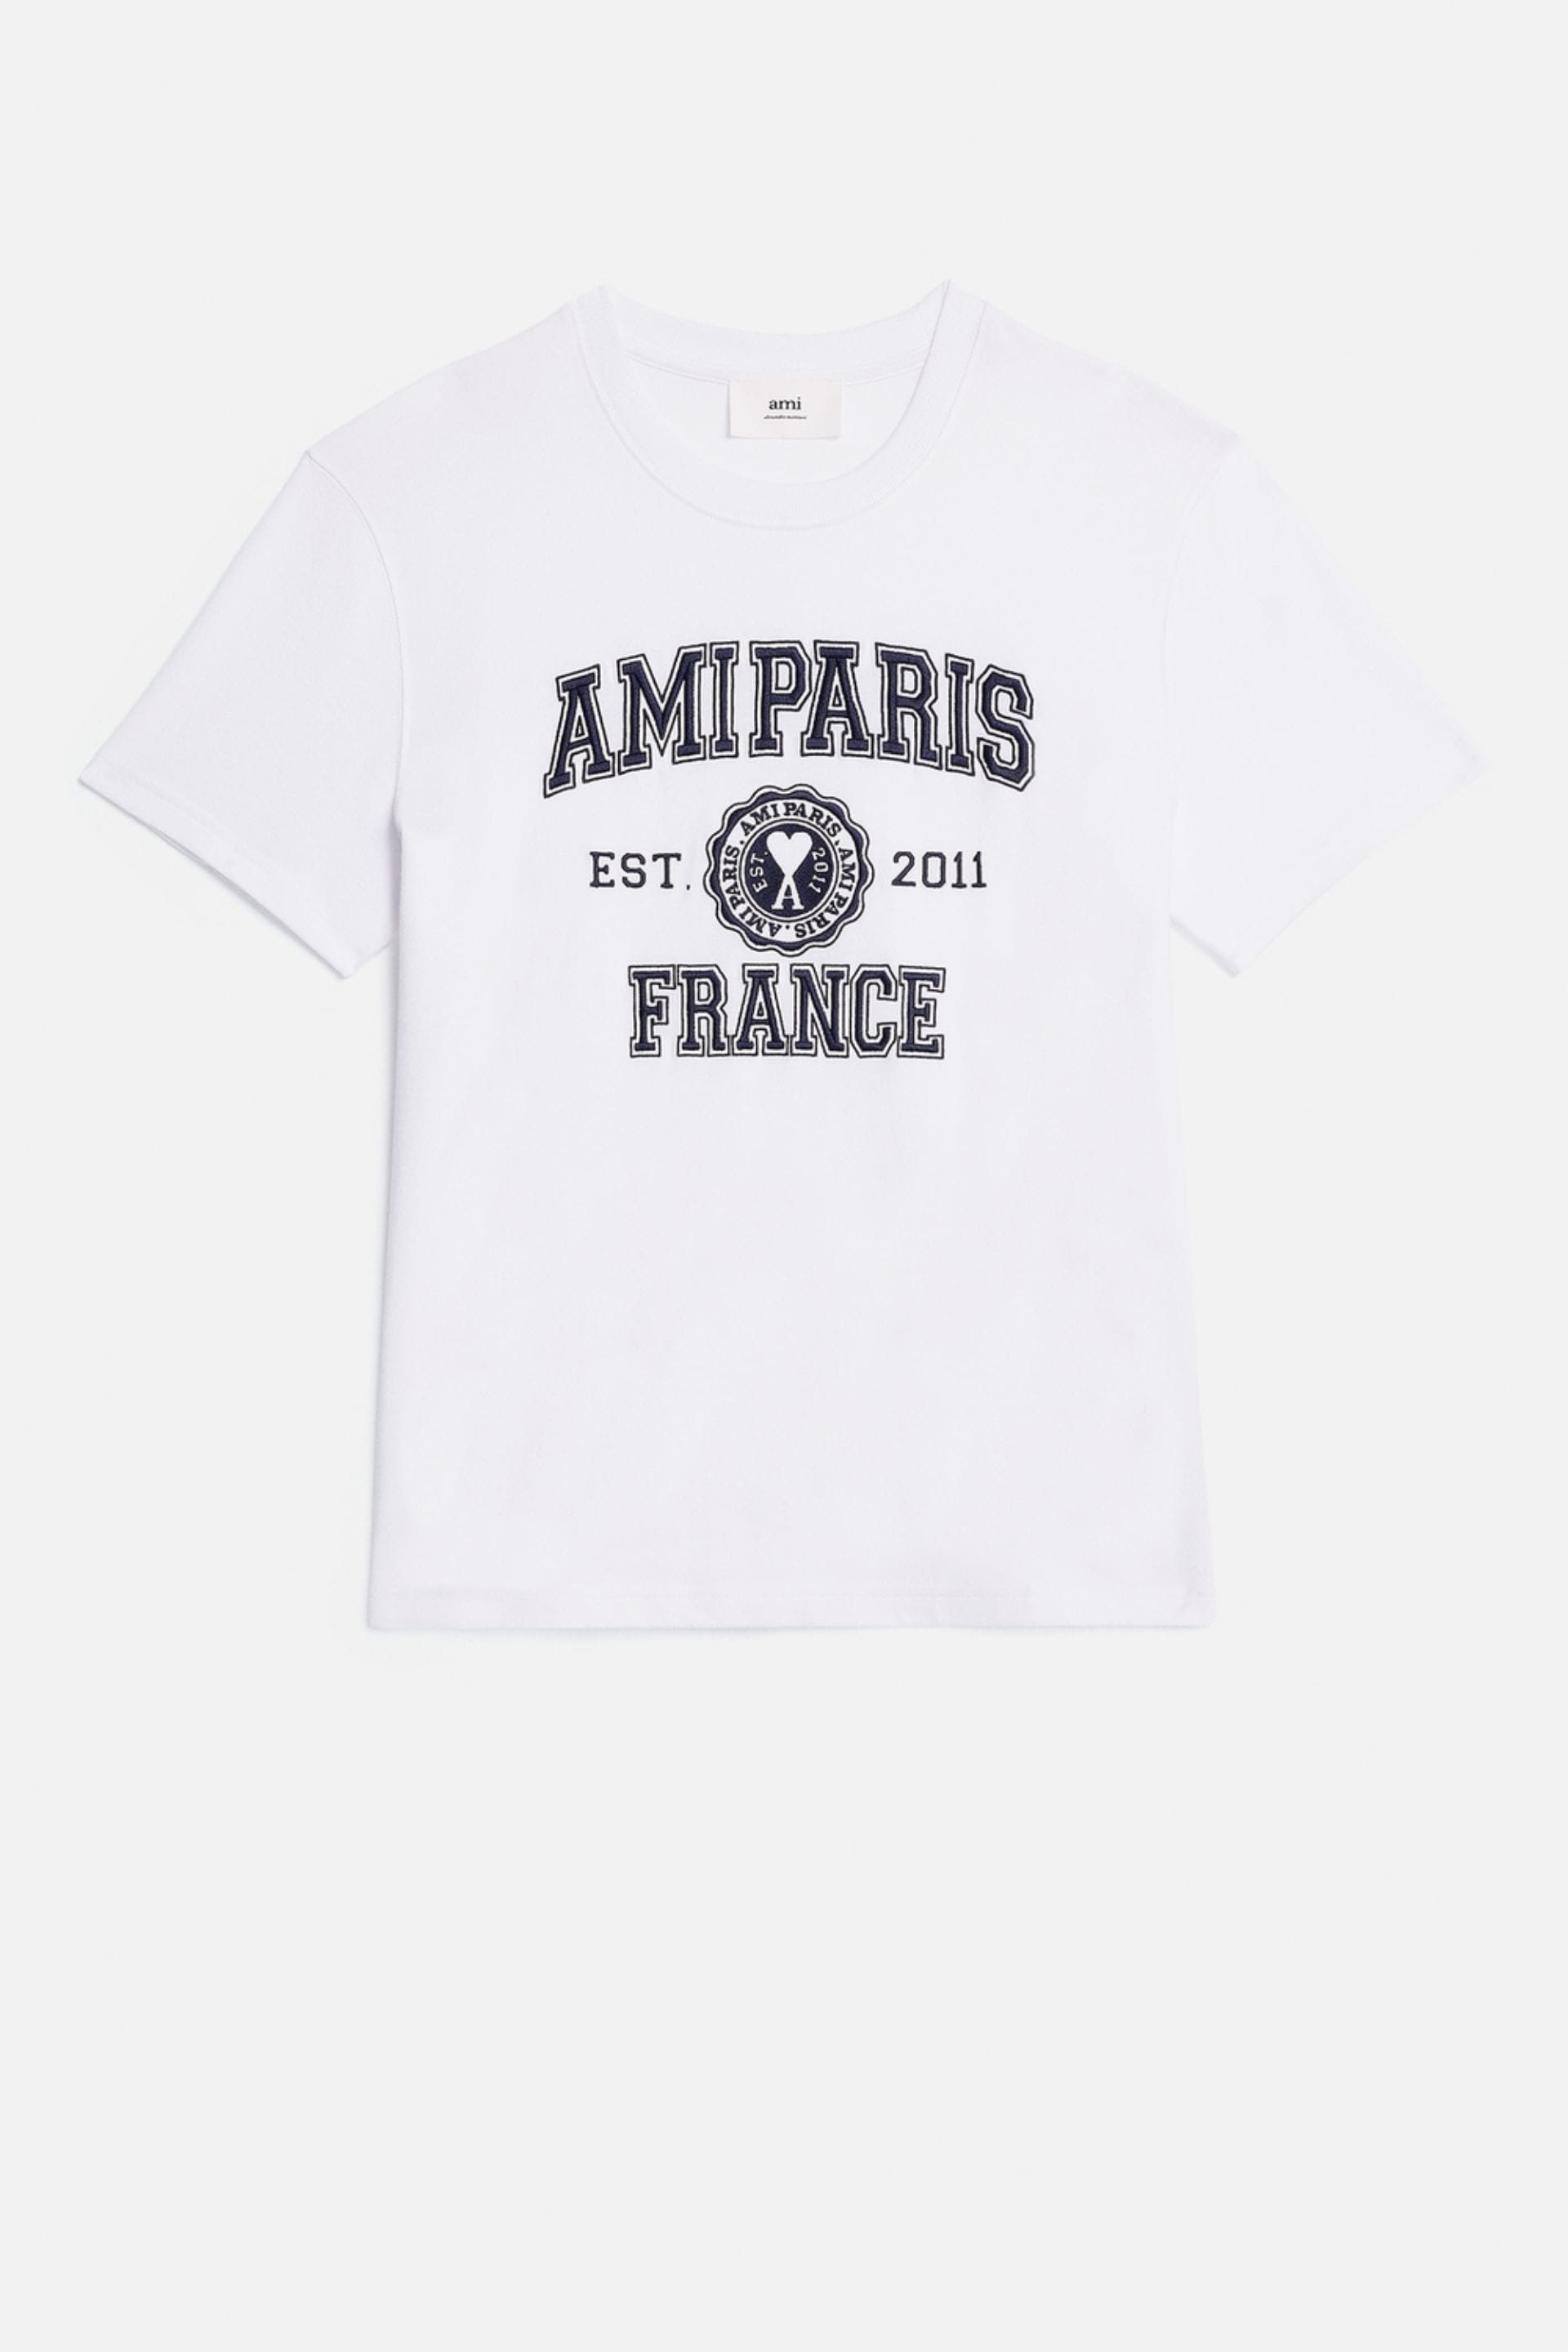 Ami Paris France T Shirt - 1